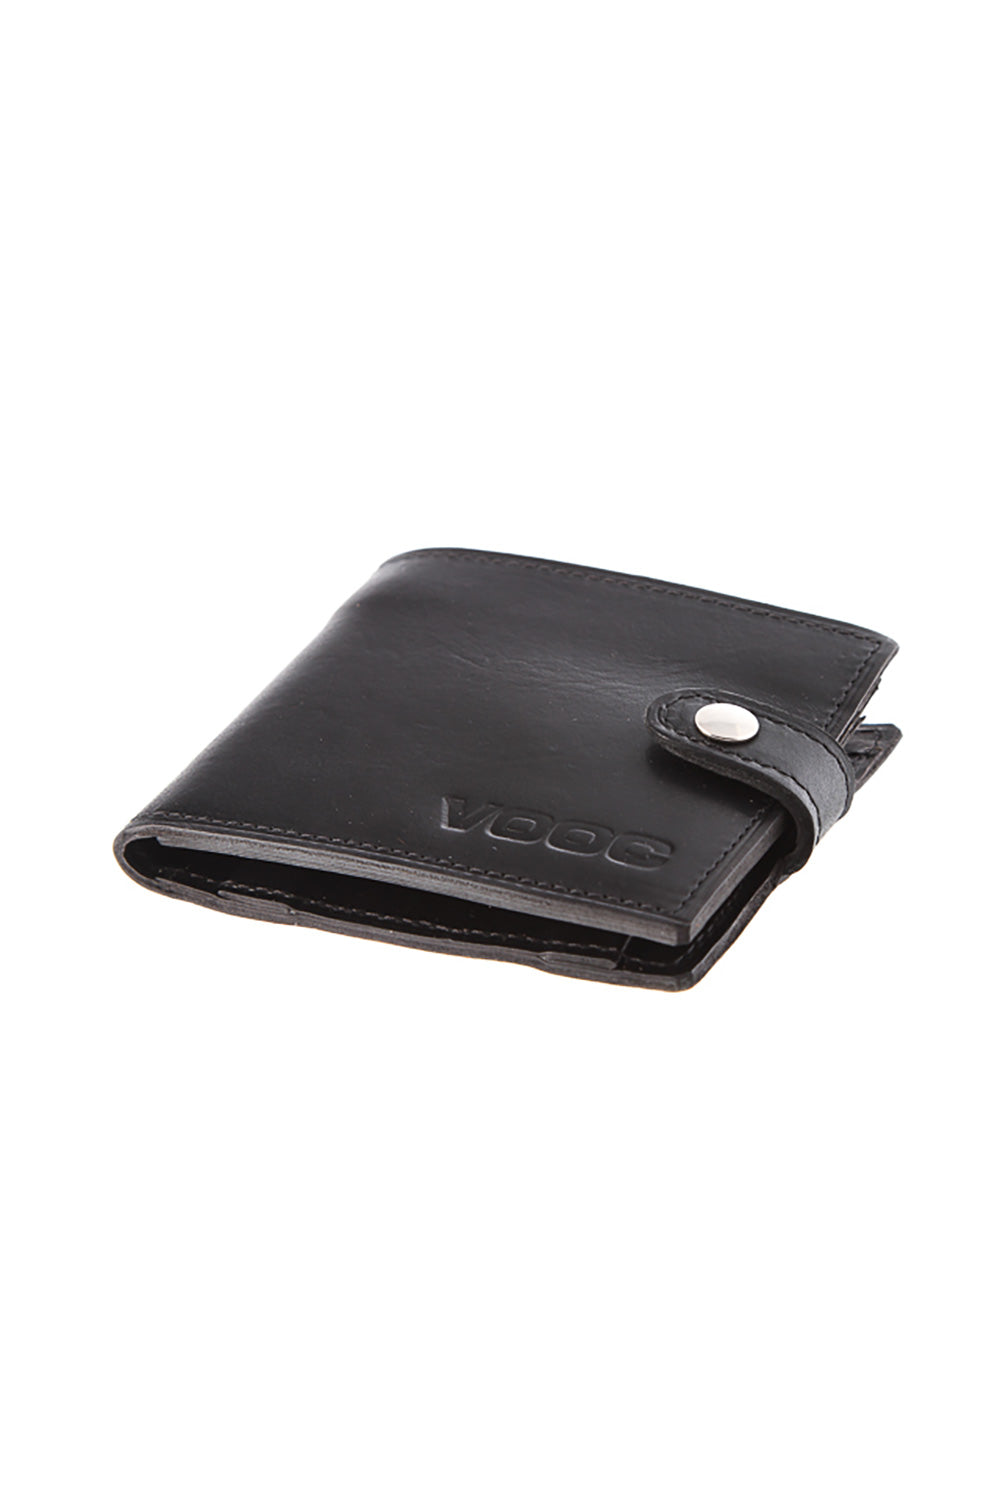 Wallet model 152152 Elsy Style Wallets for Women, Purses, Belts